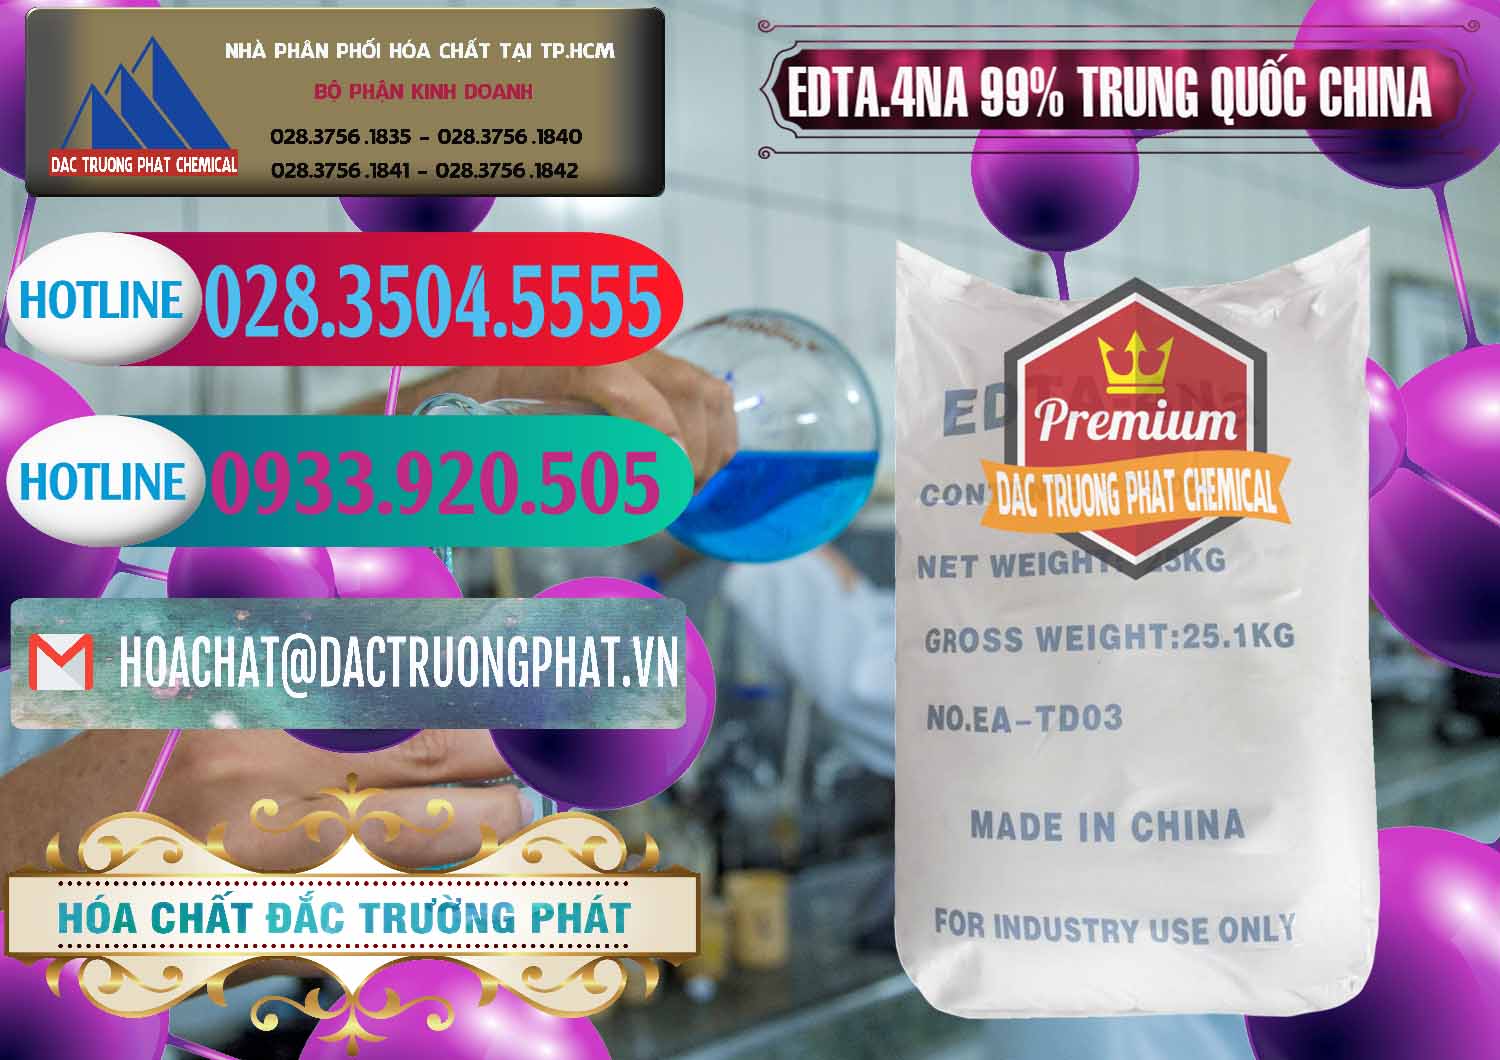 Chuyên cung ứng _ bán EDTA.4NA - EDTA Muối 99% Trung Quốc China - 0292 - Nơi chuyên nhập khẩu _ phân phối hóa chất tại TP.HCM - truongphat.vn